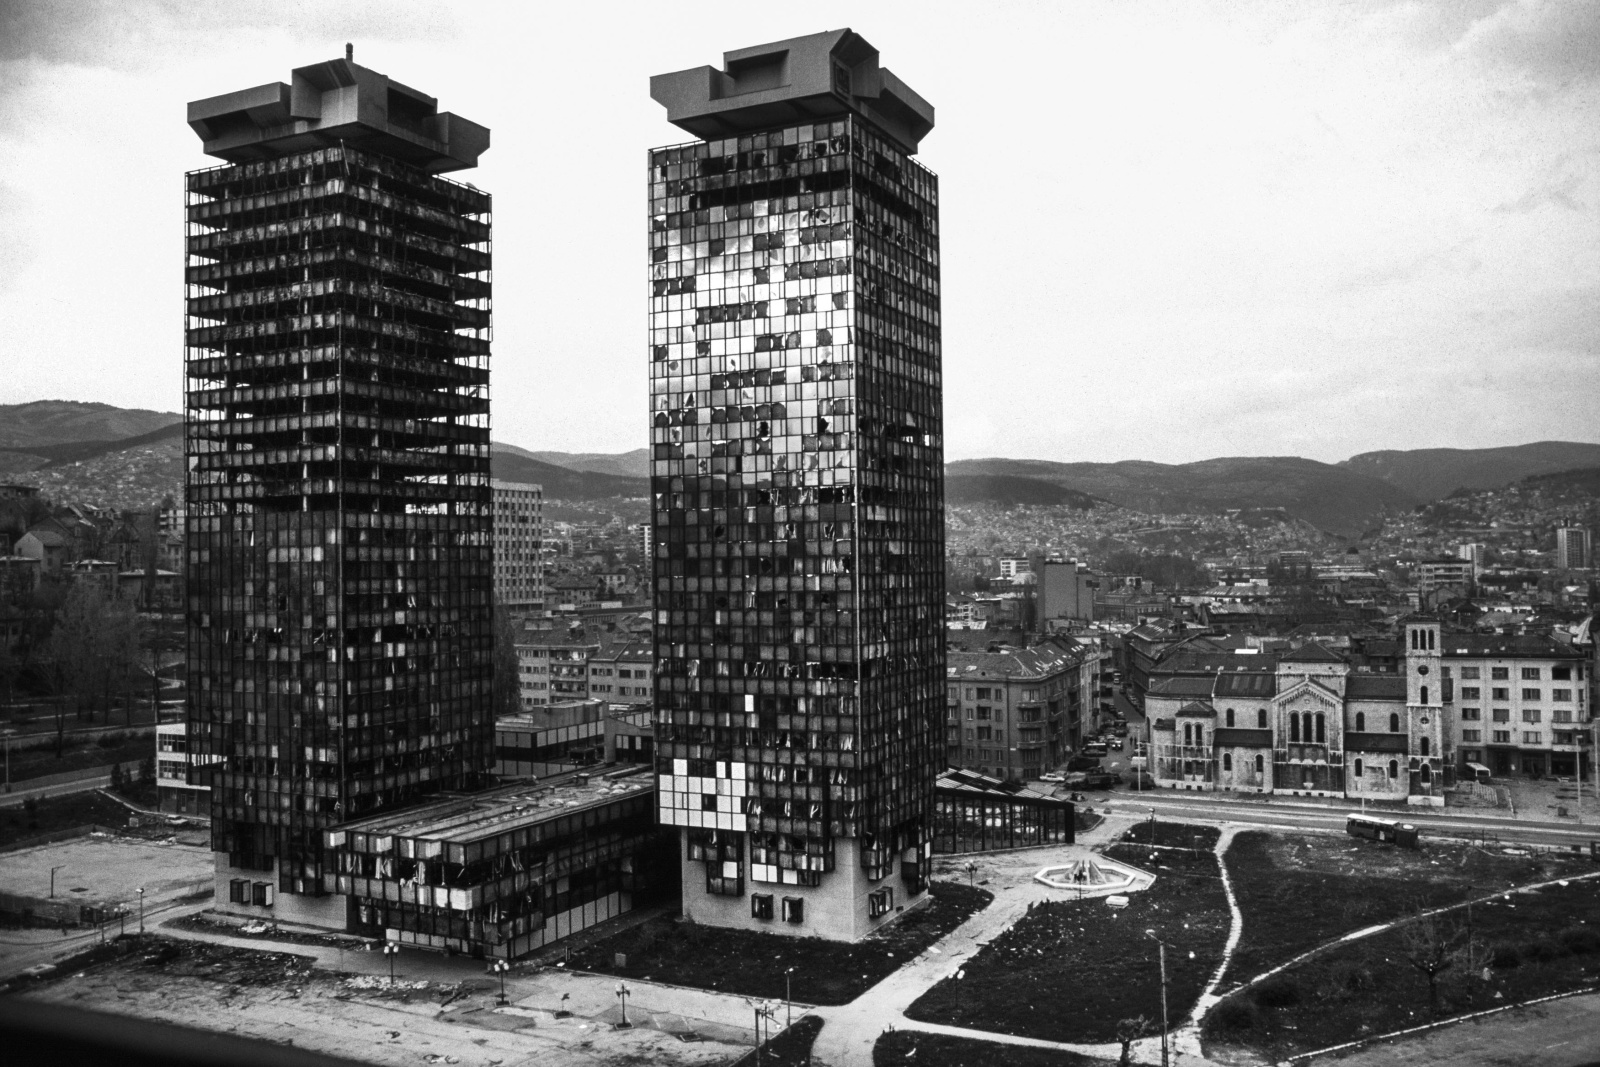 Sarajevo 1993 - La città assediata per 1425 giorni, tenuta sotto costante bombardamento dall'esercito serbo che bombardava dalle colline sulla città.